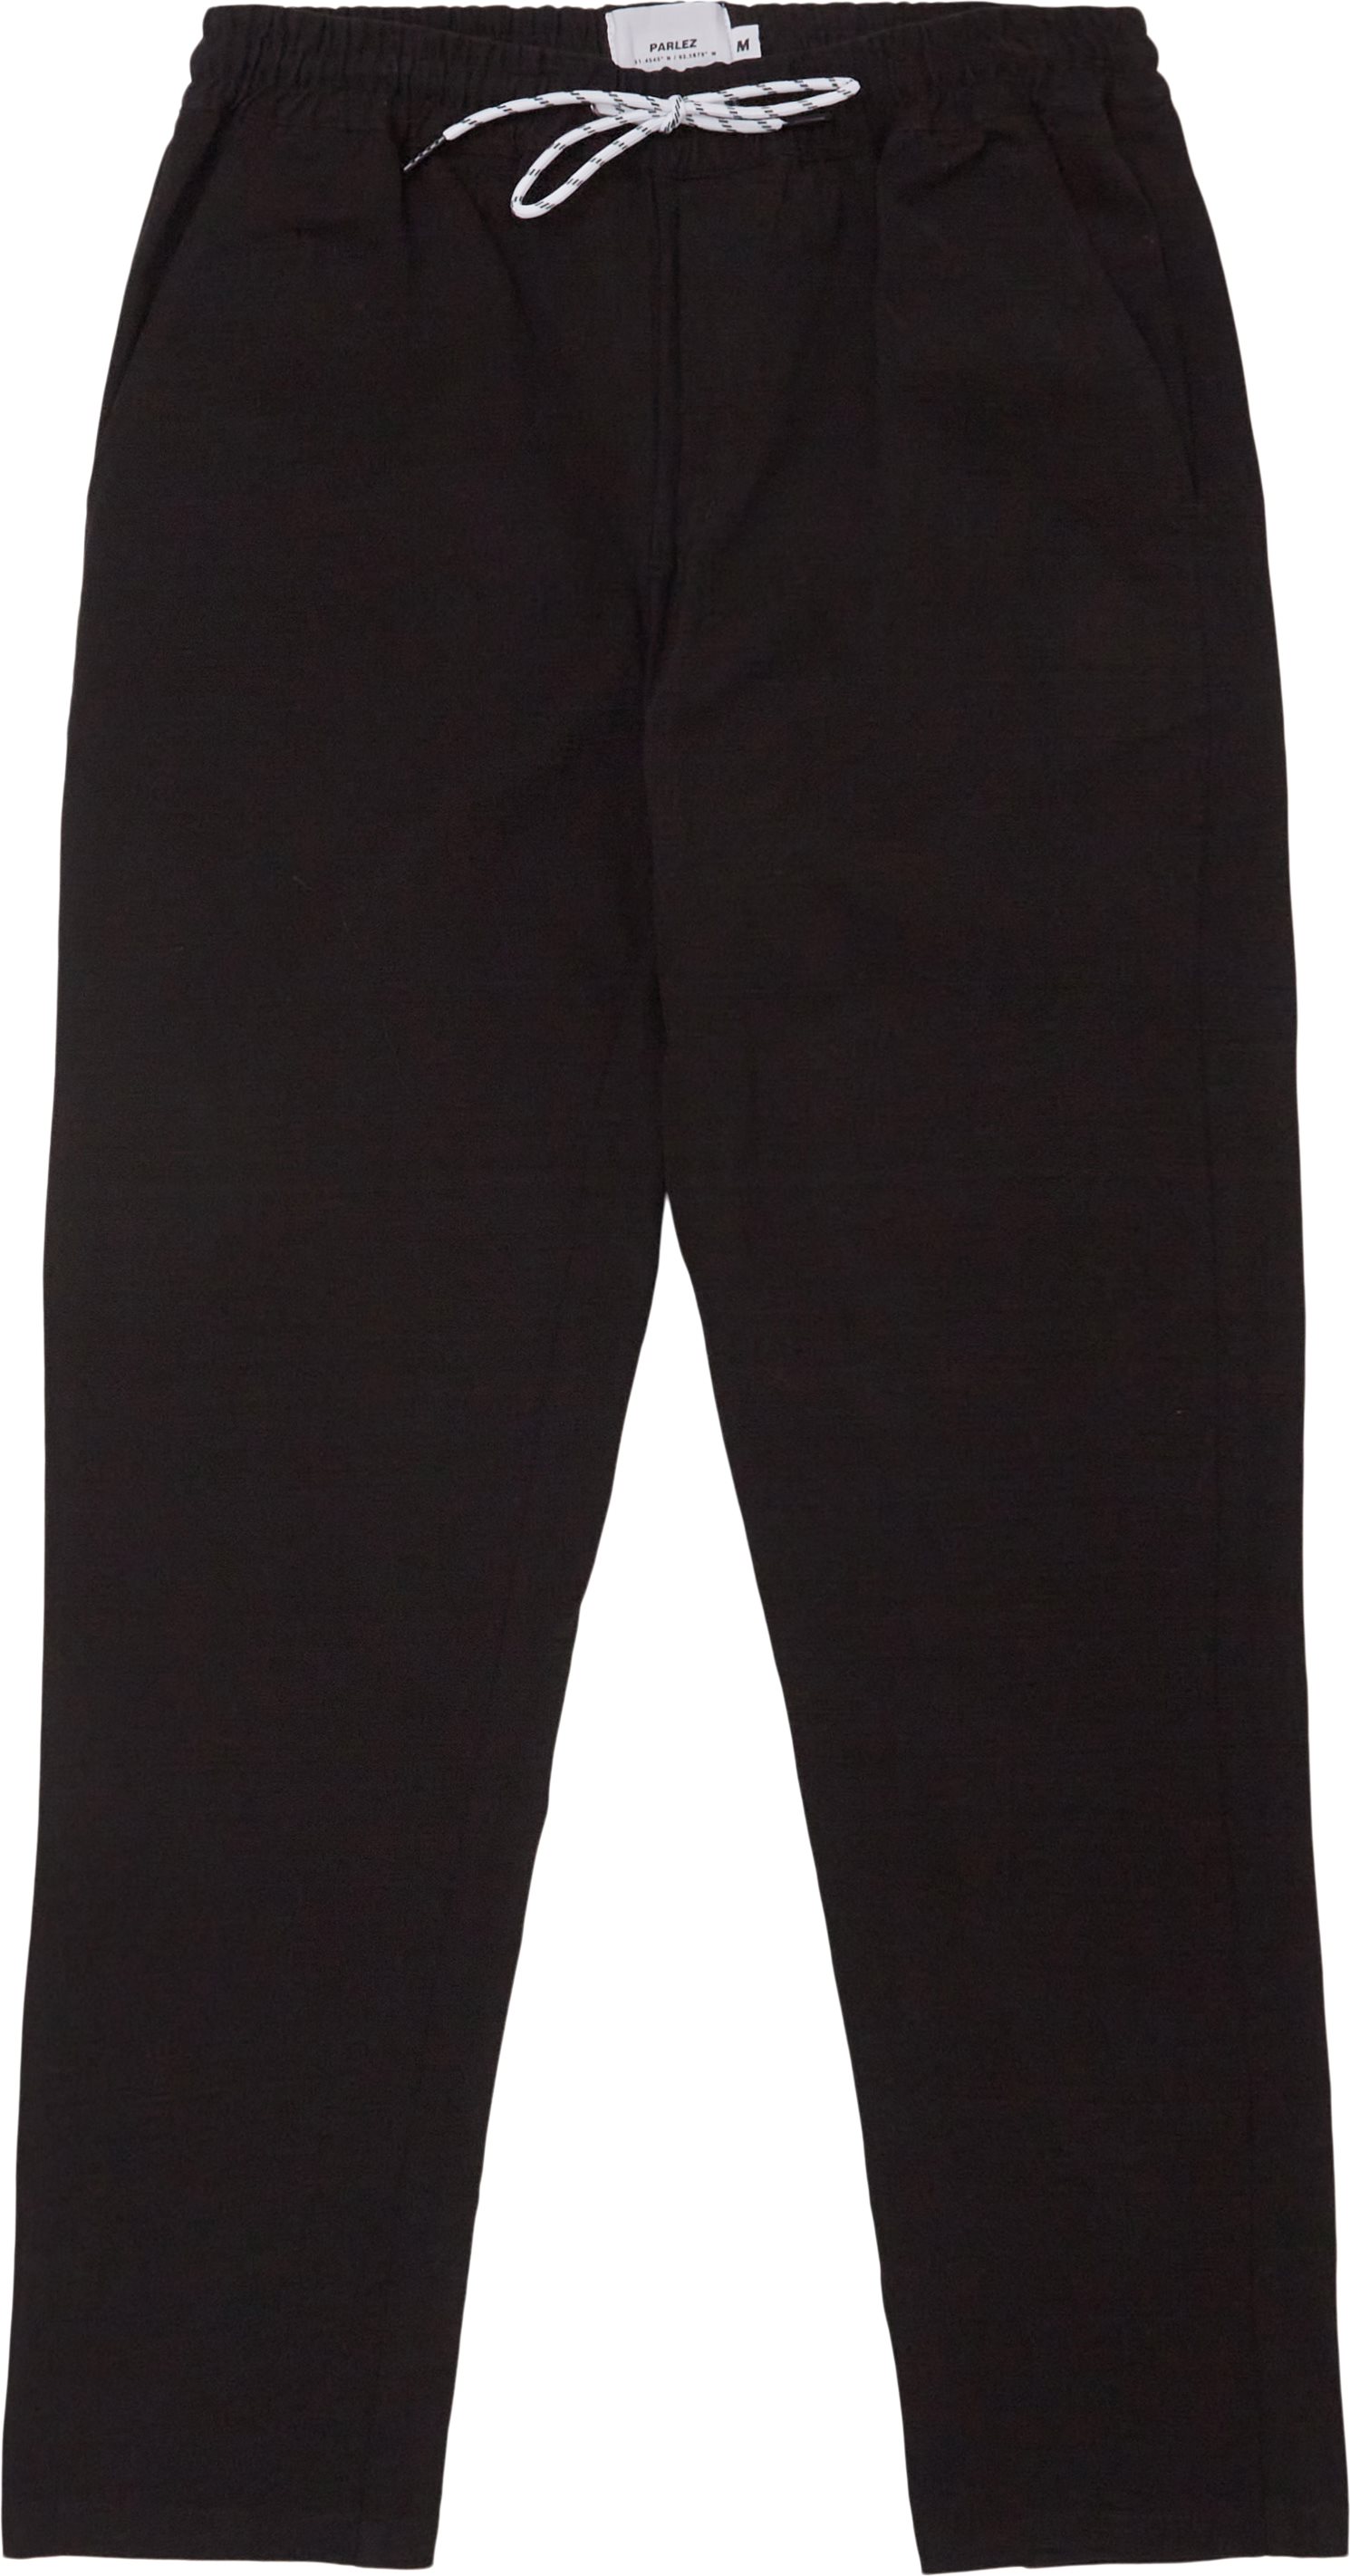 Spring Trousers  - Bukser - Regular fit - Sort